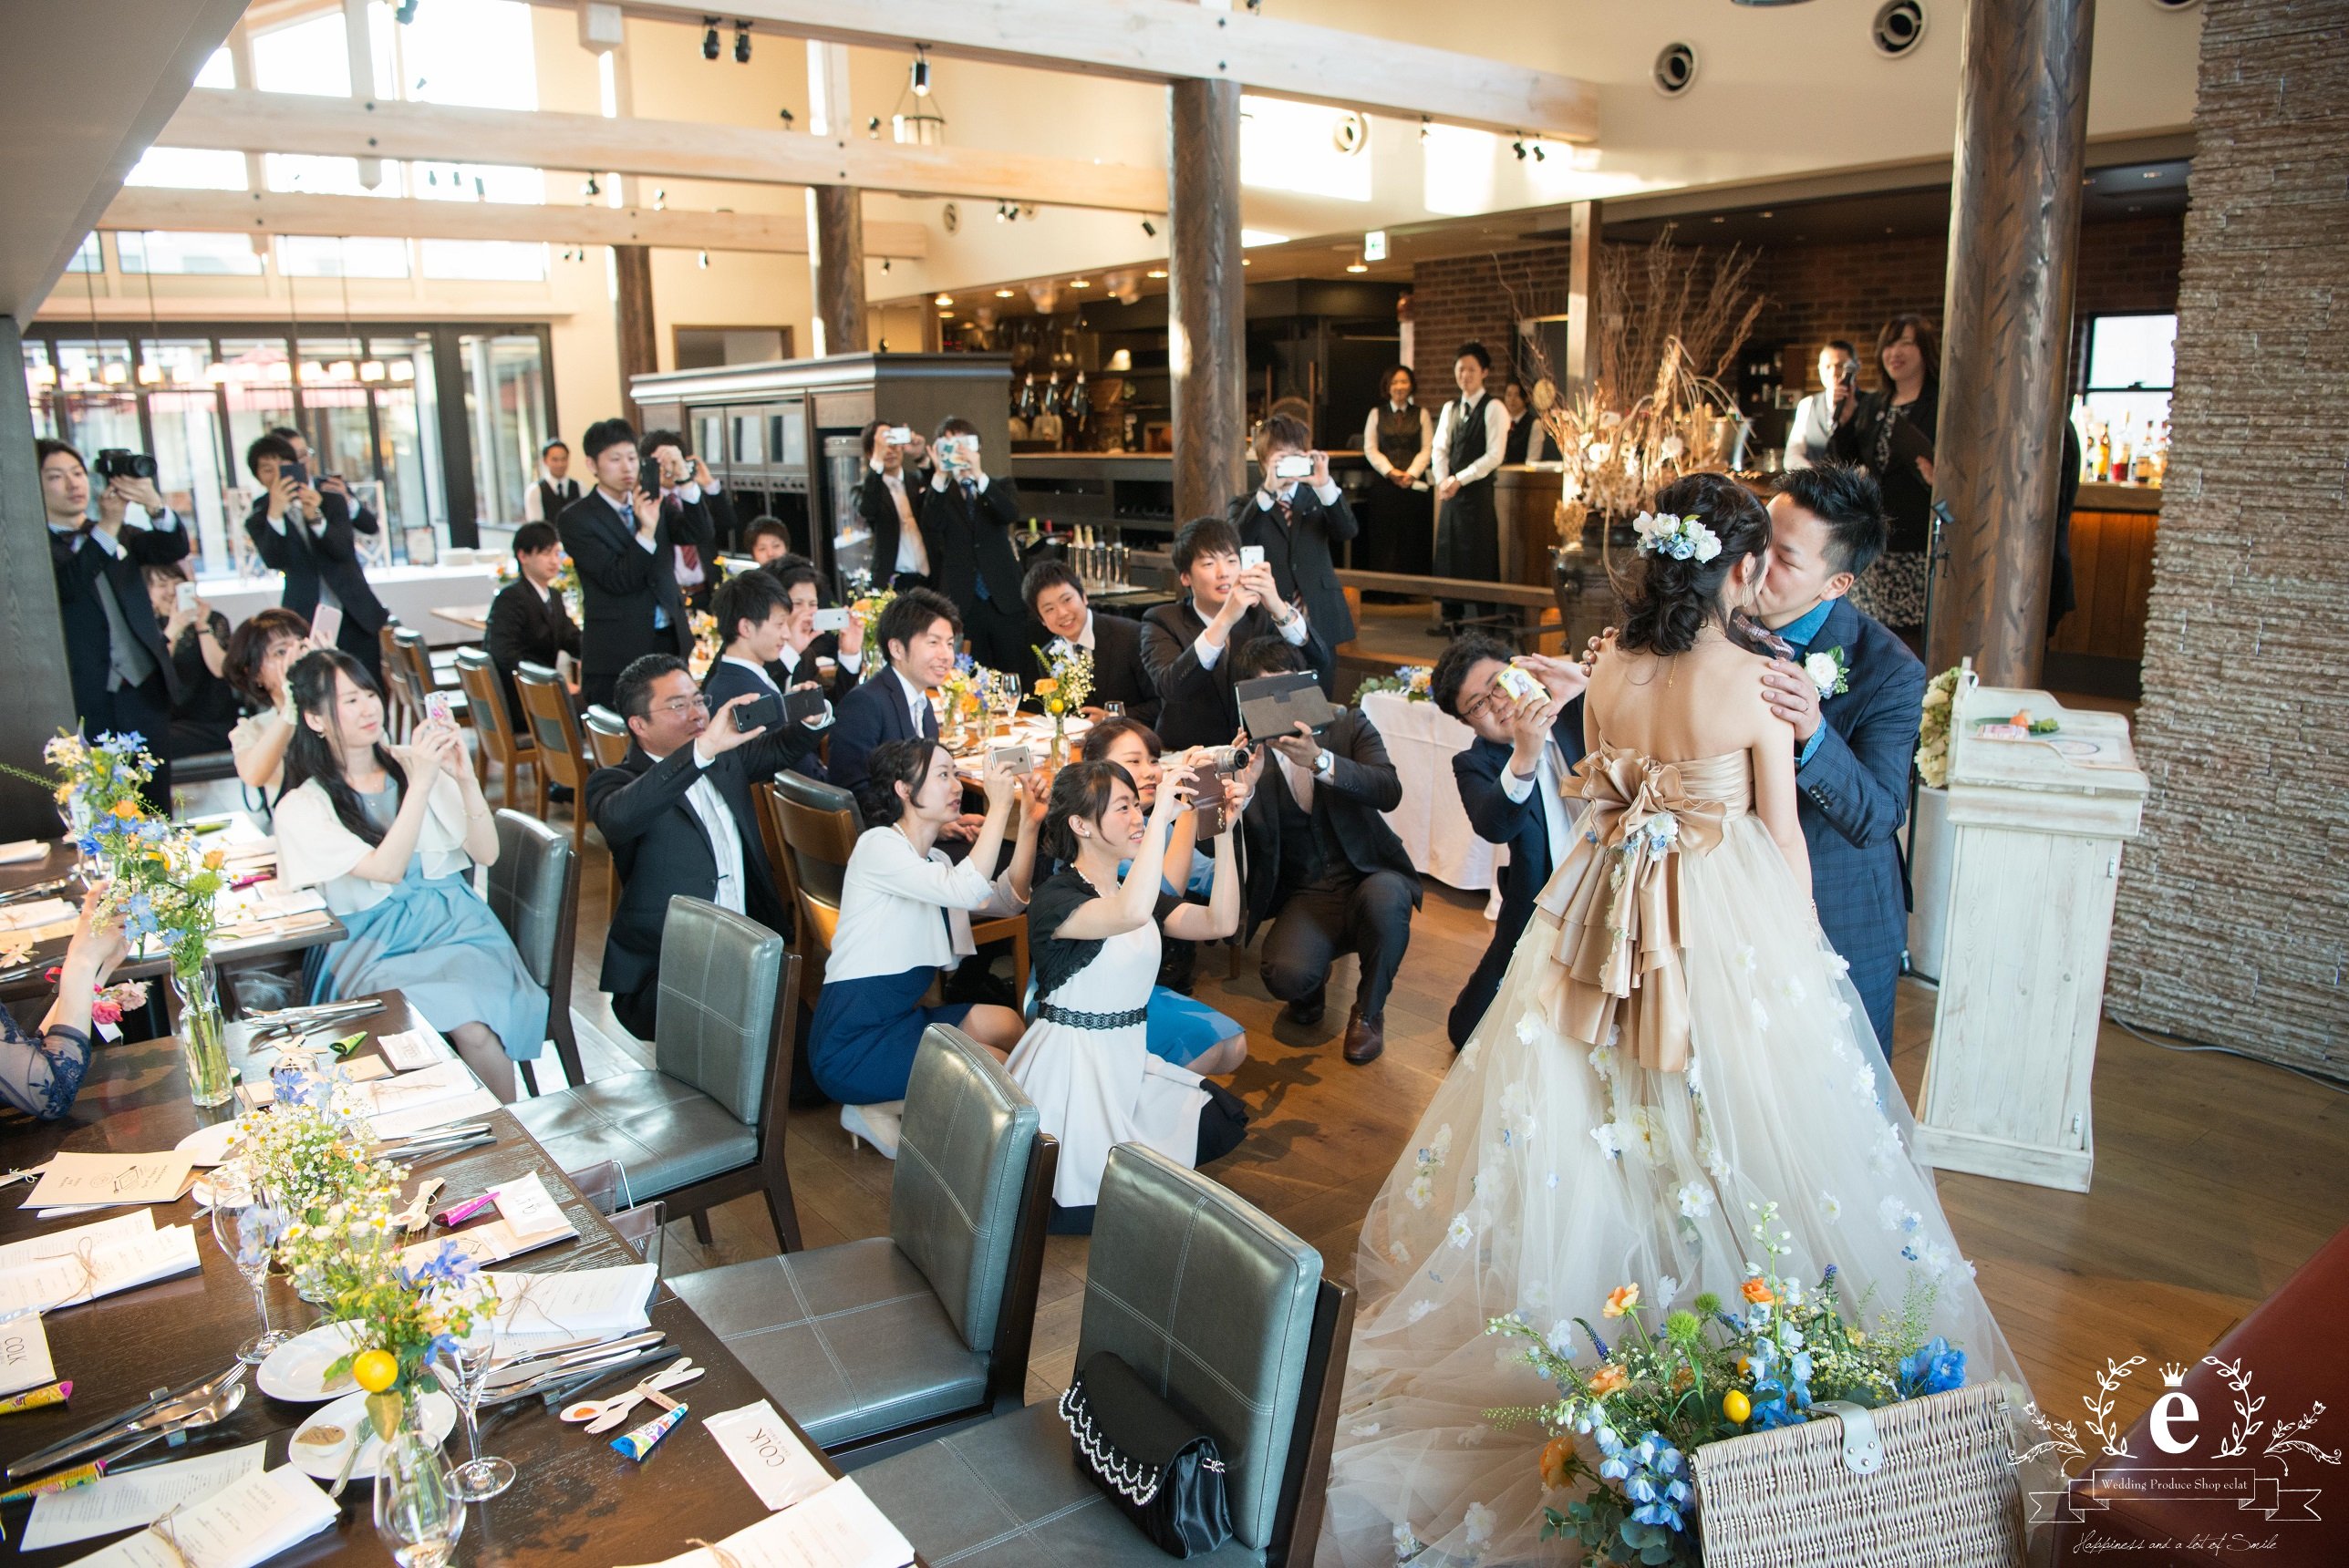 水戸-茨城-つくば-結婚式-COLK-ウェディングパーティー-レストラン-1.5次会-会費-エクラ-カジュアル-友人-二部制